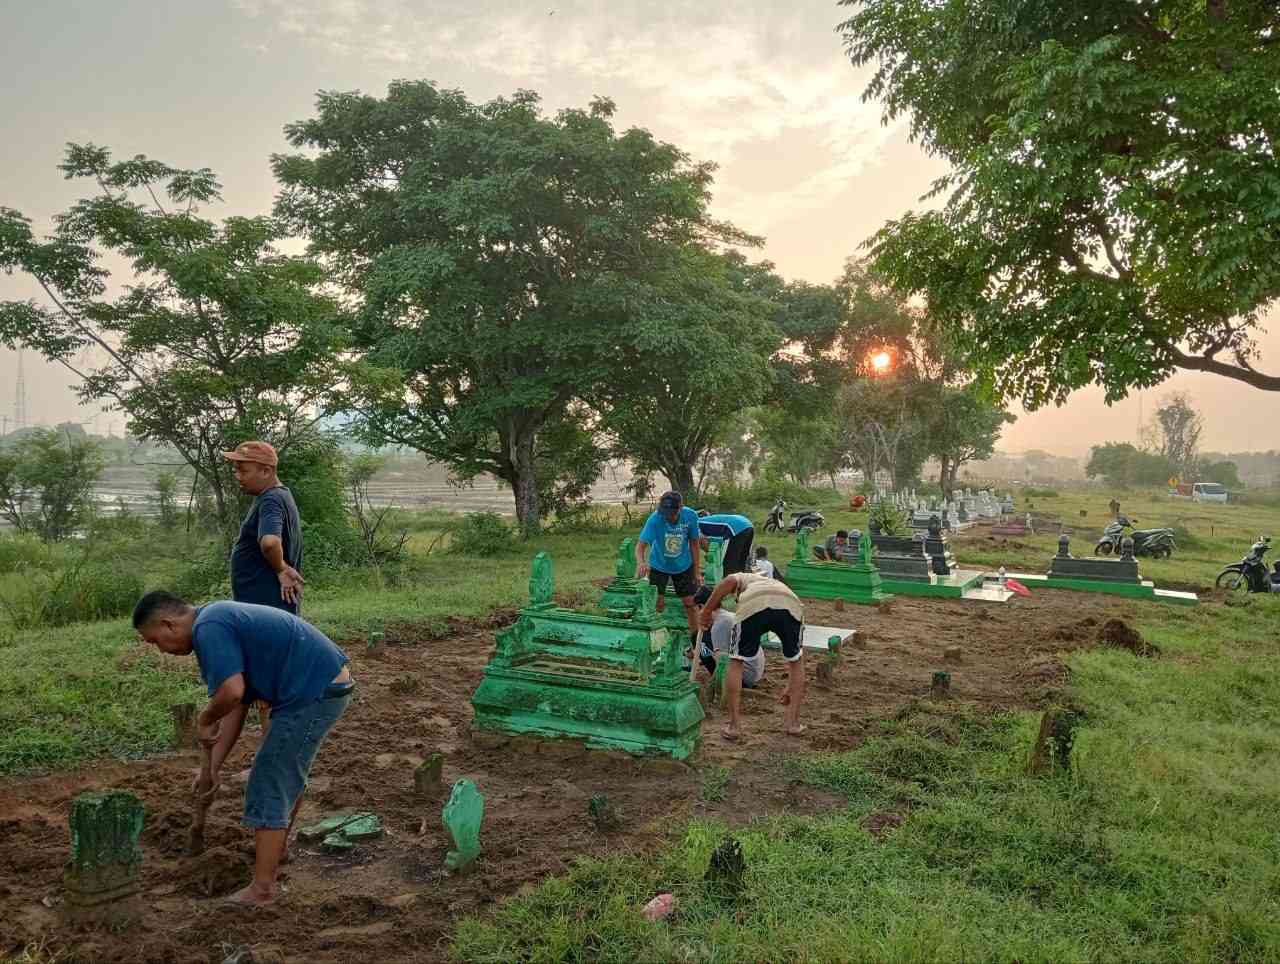 Ngosar di Sampang, Madura: Membangun Kebersamaan dalam Tradisi Bersih-Bersih Makam